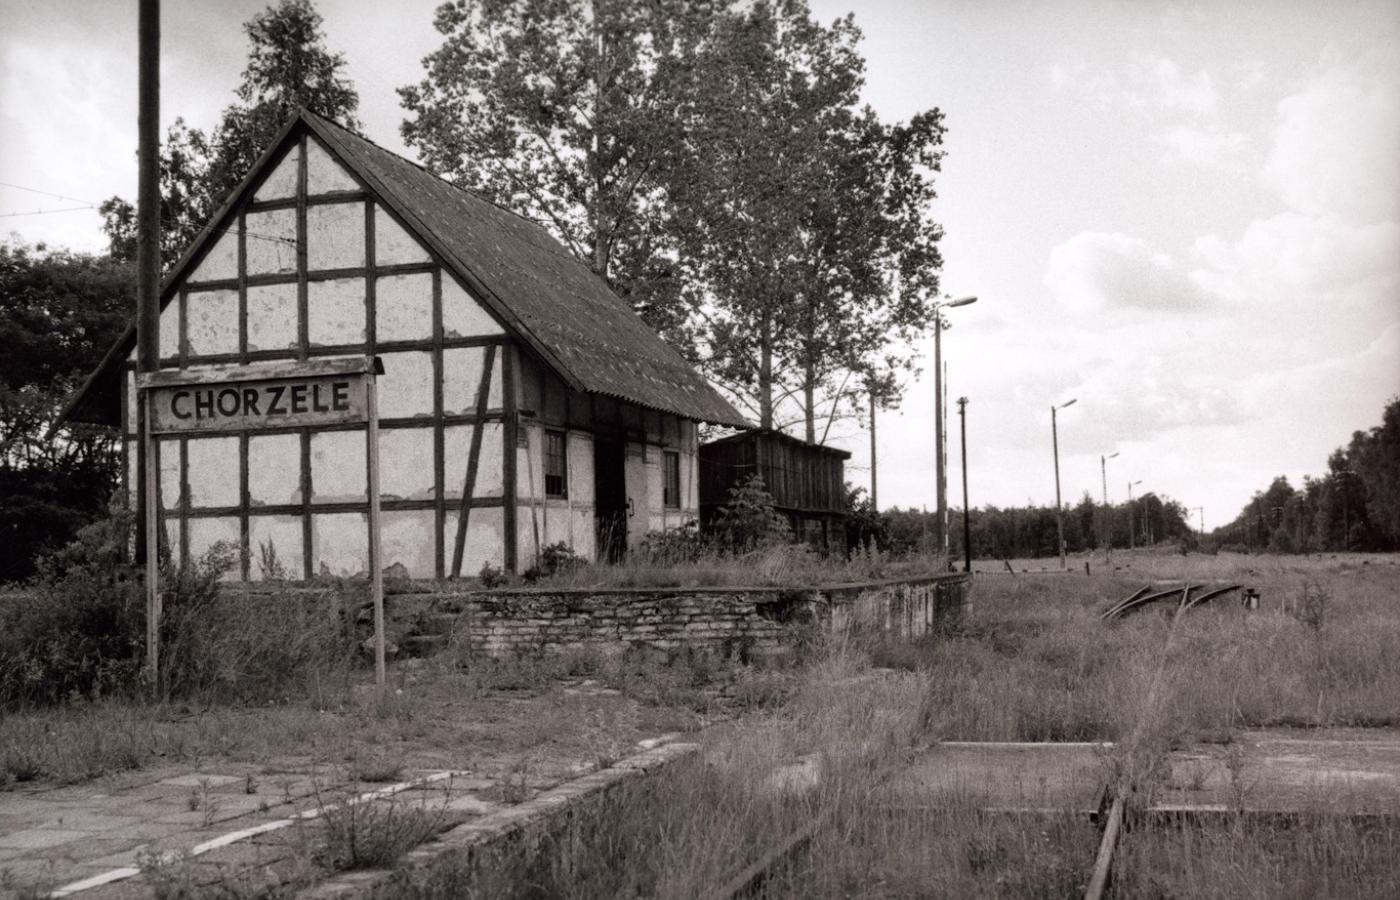 Stacja kolejowa w Chorzelach – od lat nieczynna. Tutaj wysiadali z pociągów warszawscy aktorzy i ekipa filmowa z Wiednia. Stąd podwodami jechali do miasta, gdzie przydzielano im kwatery.